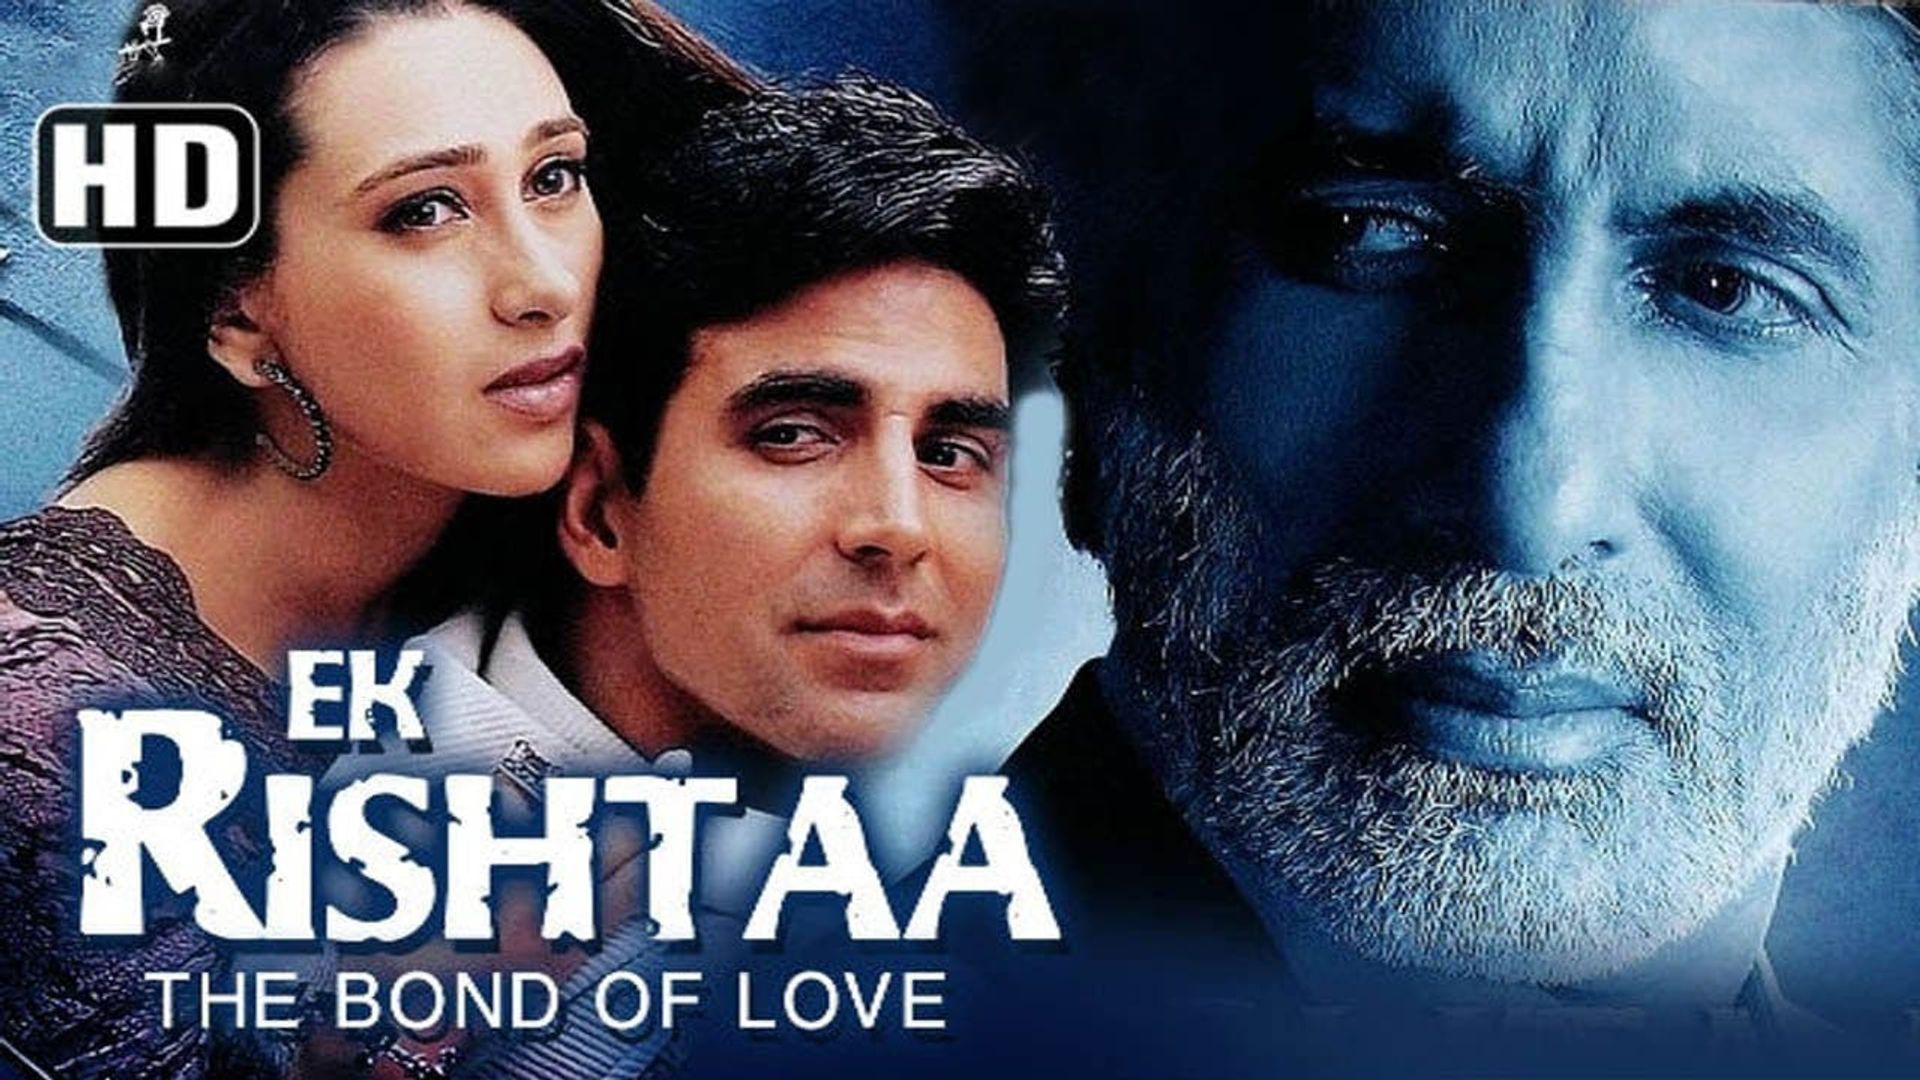 Ek Rishtaa: The Bond of Love background